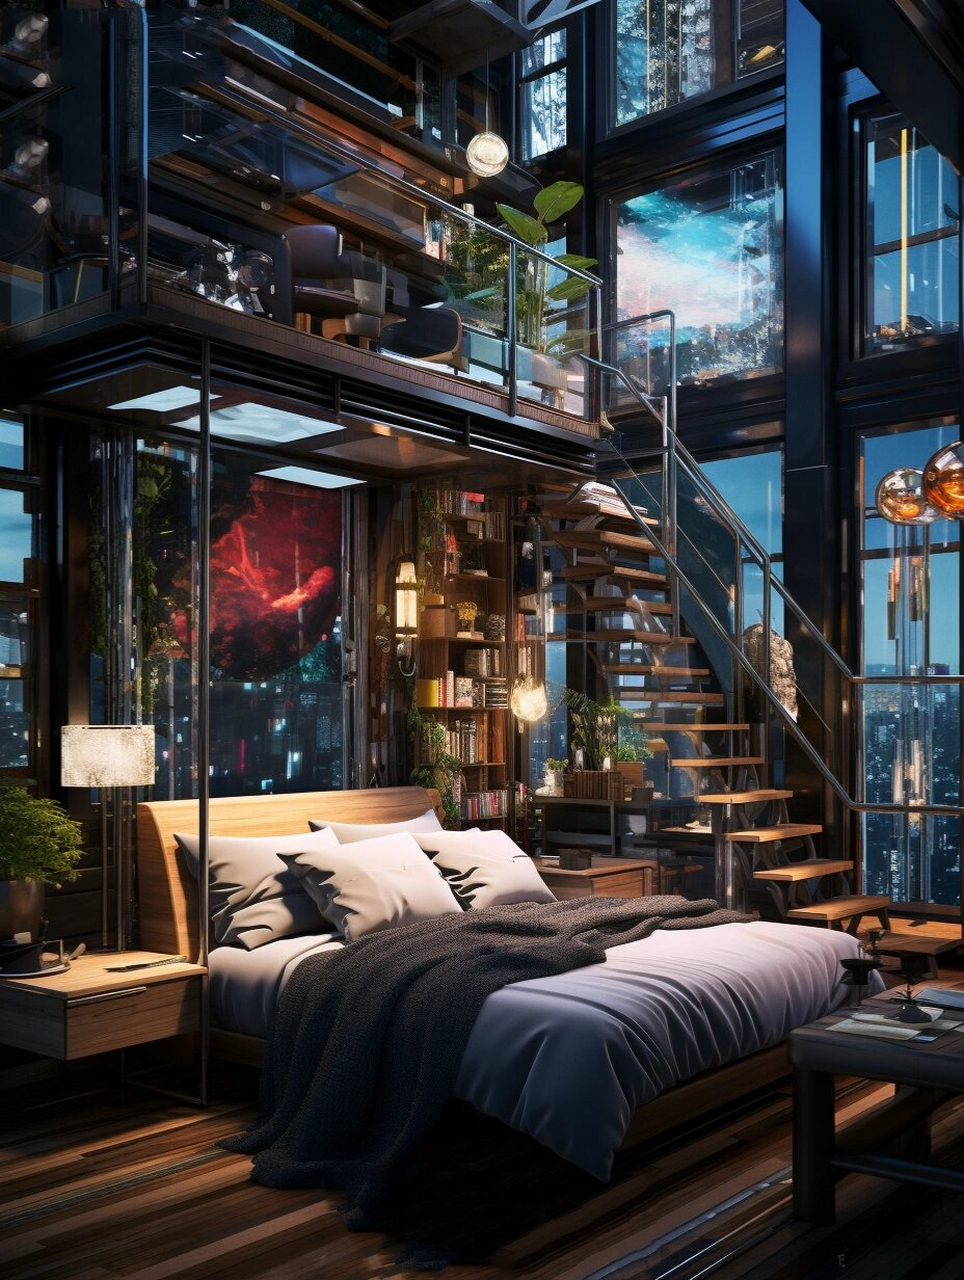 赛博朋克风房间 你最喜欢哪一间呢 这个赛博朋克风格的房间将未来与